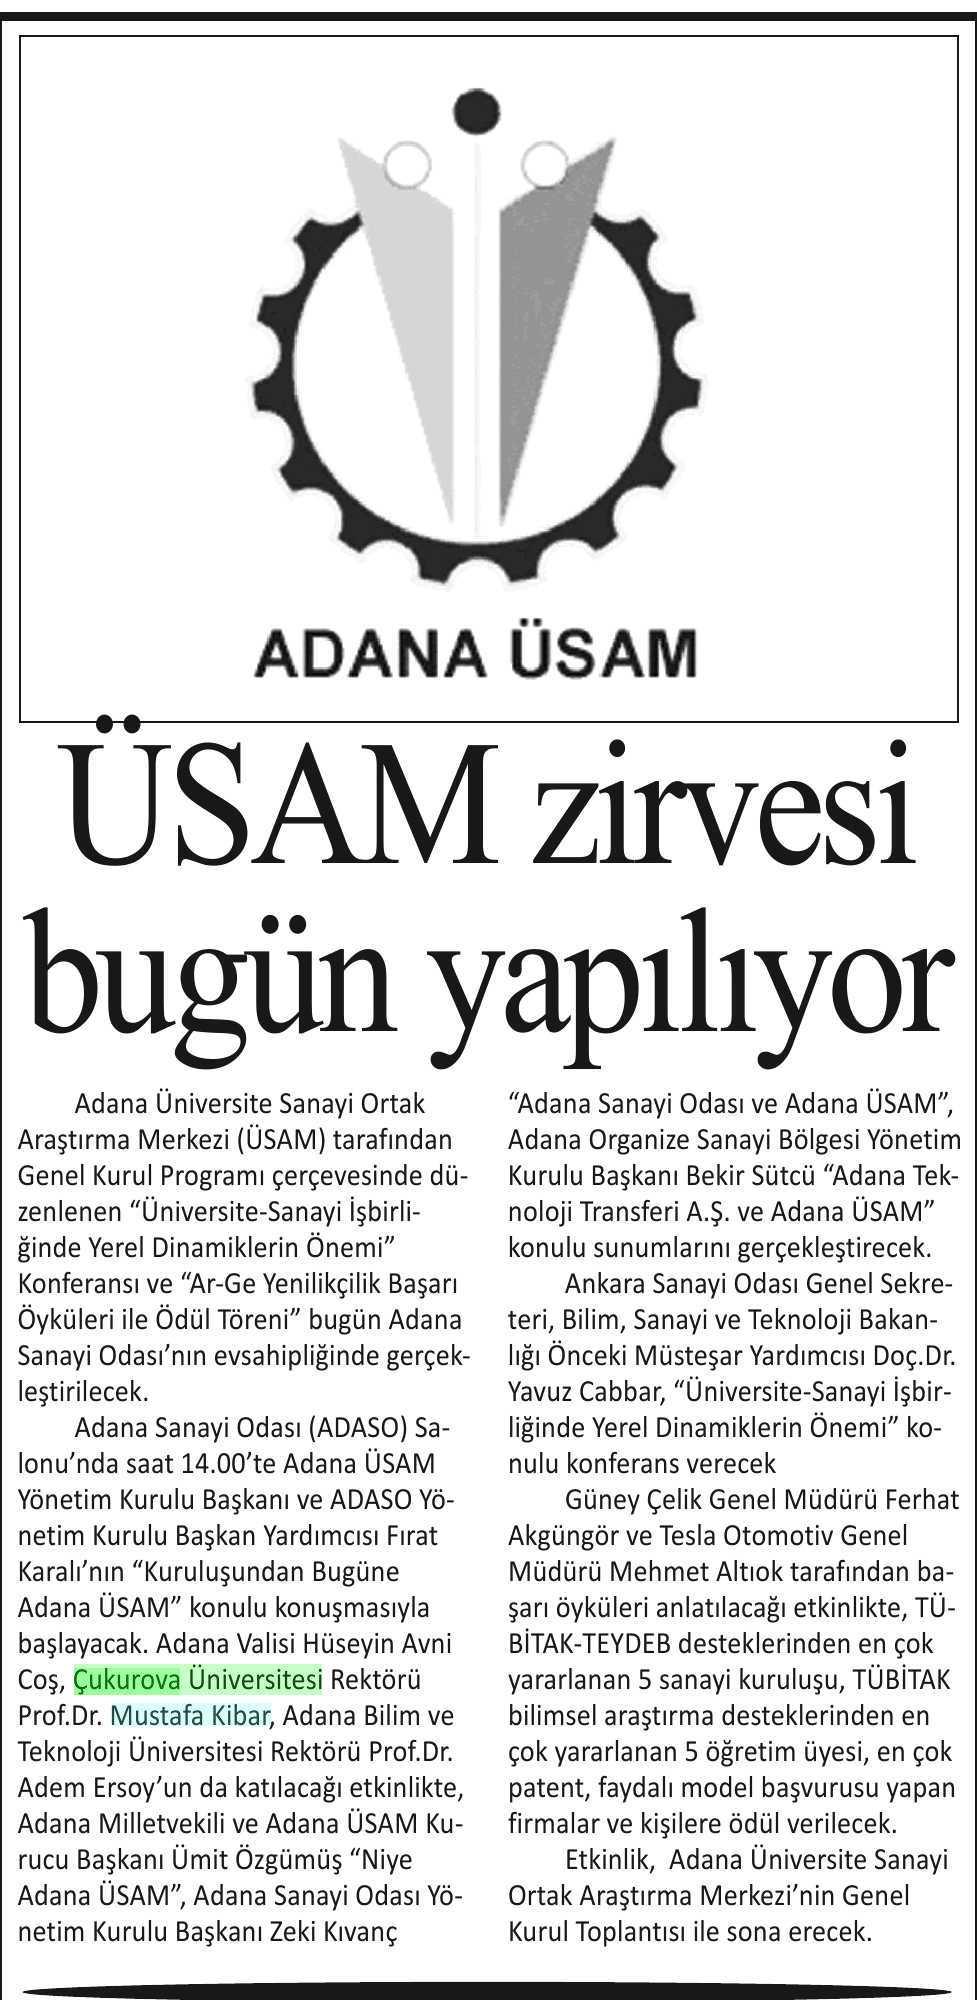 USAM ZIRVESI BUGÜN YAPILIYOR Yayın Adı : Adana Kent